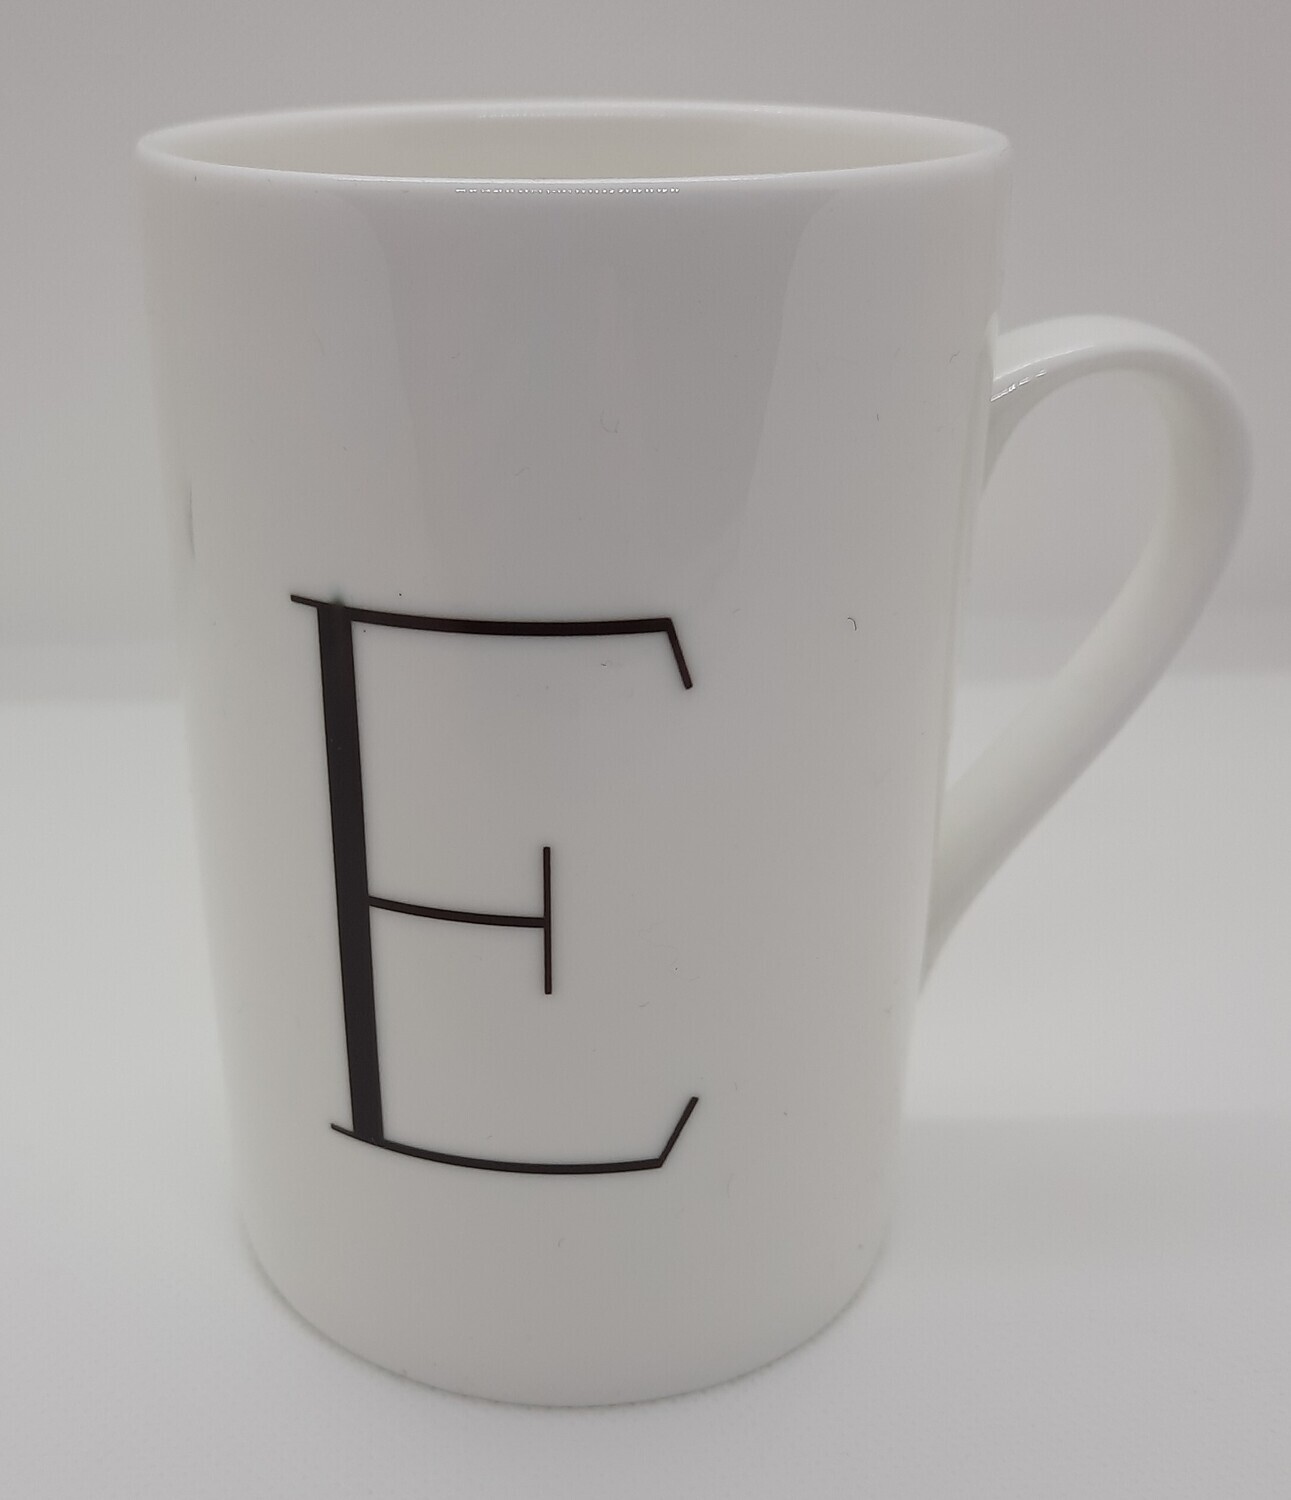 Sehr edle schlanke Porzellantasse mit einem edlen Monogramm bedruckt. Die  Tasse ist sehr leicht und dünn.